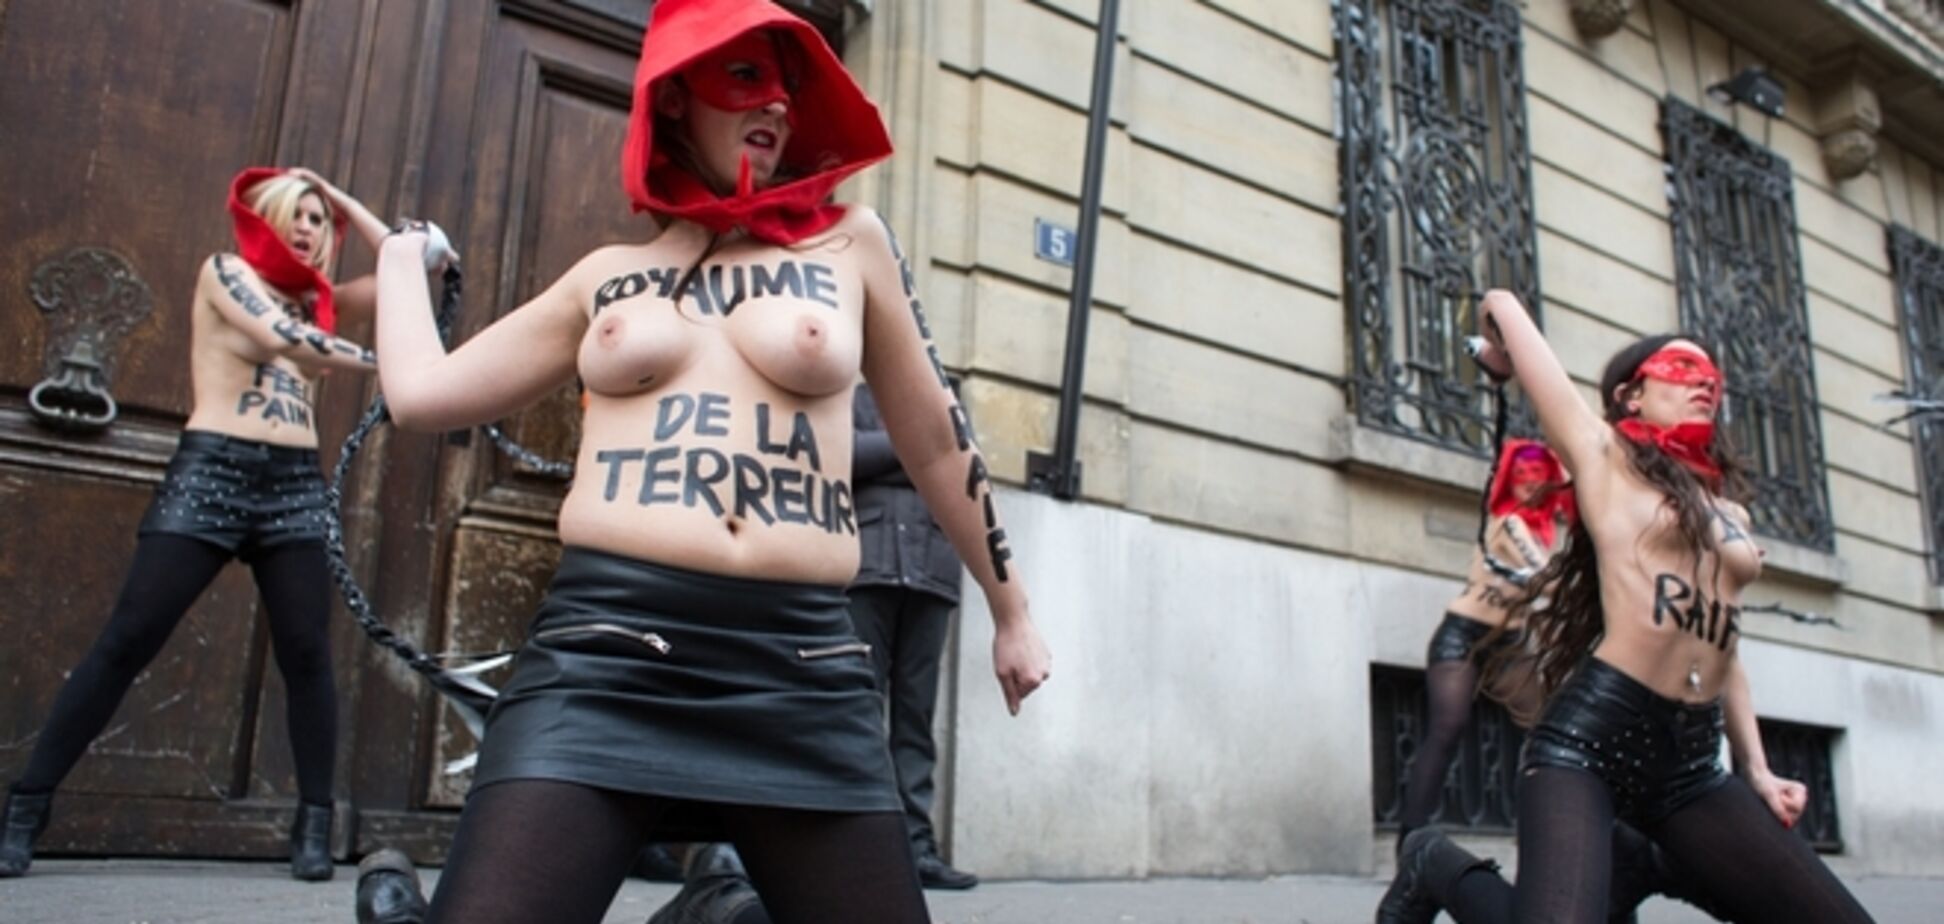 FEMENистки отомстили за 'свободолюбивого' исламиста, устроив публичные порки у посольства Саудовской Аравии. Фотофакт